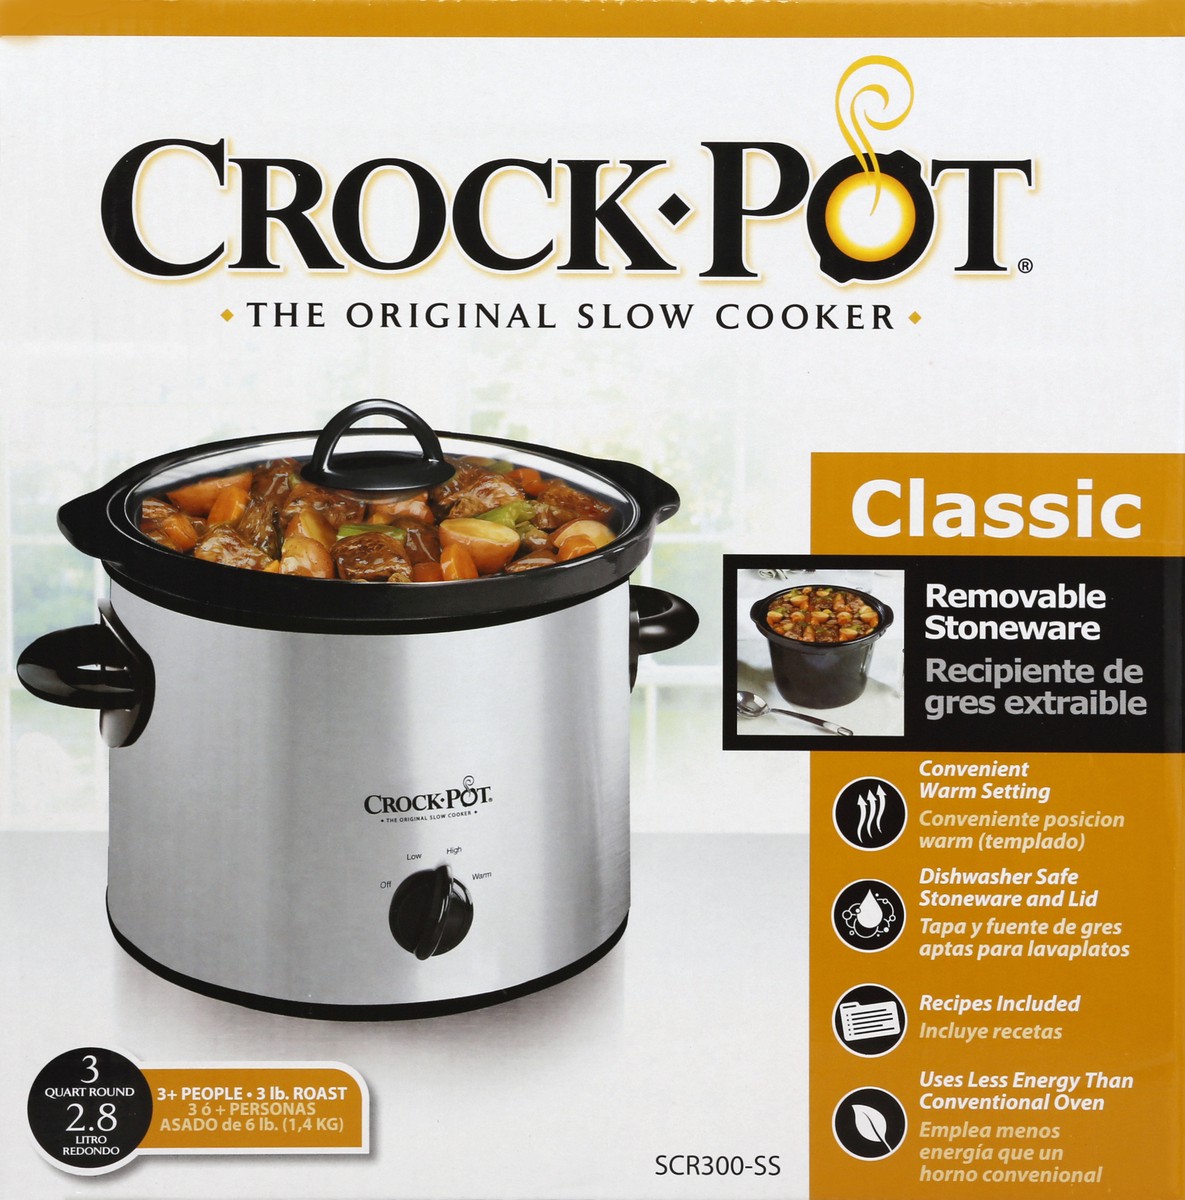 Crock-Pot Classic Original Slow Cooker